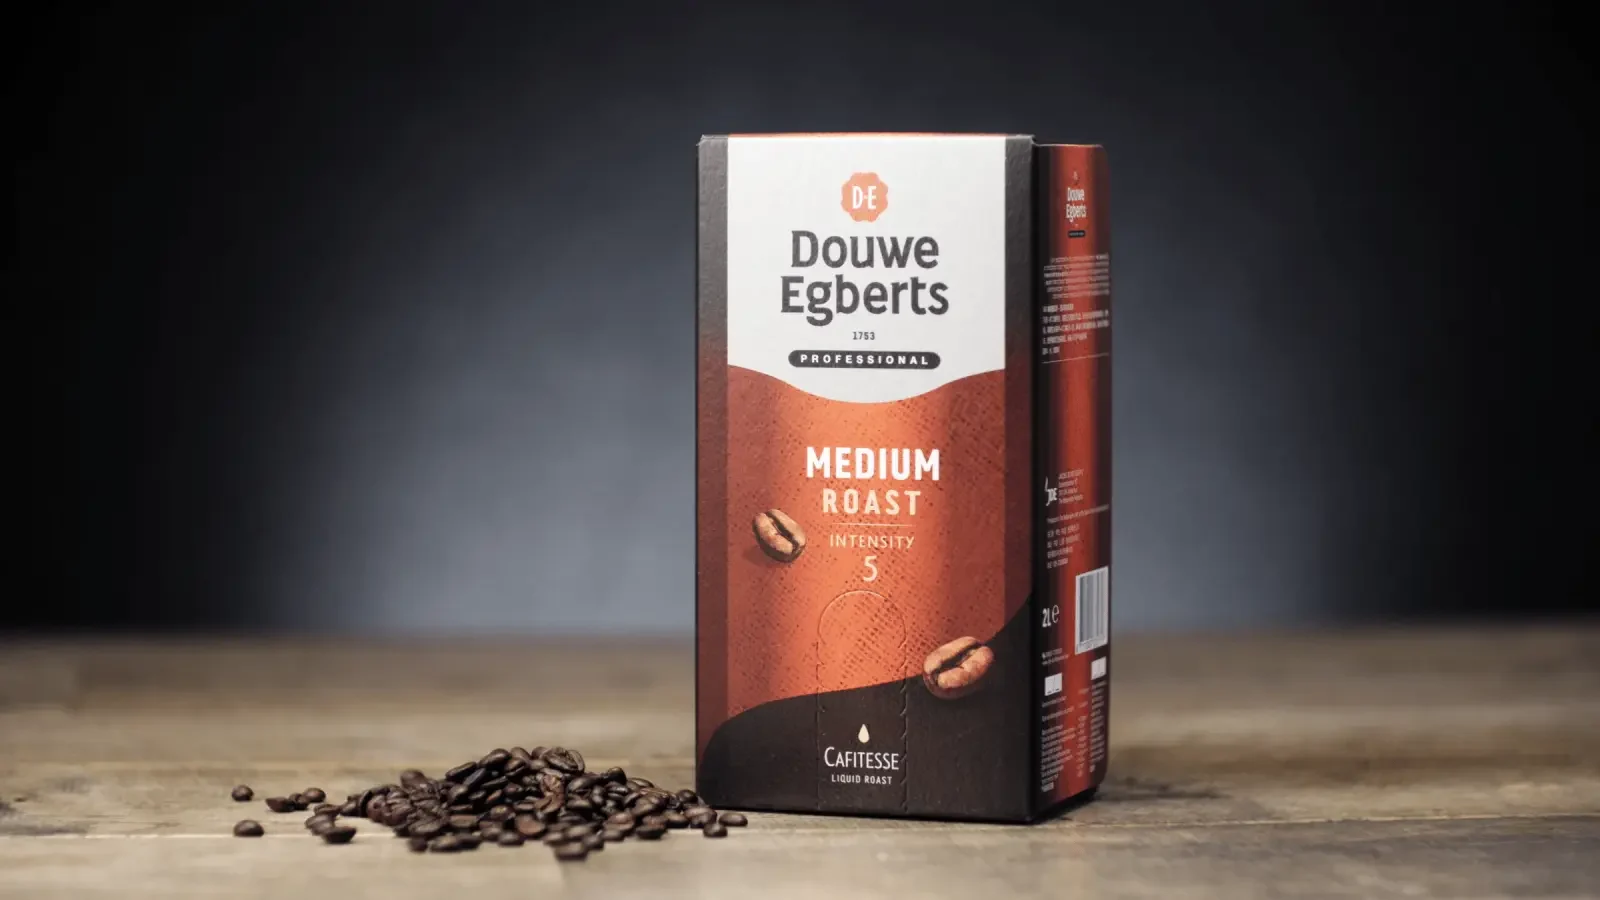 Foto van Douwe Egberts verpakking met daarnaast een hoopje koffiebonen